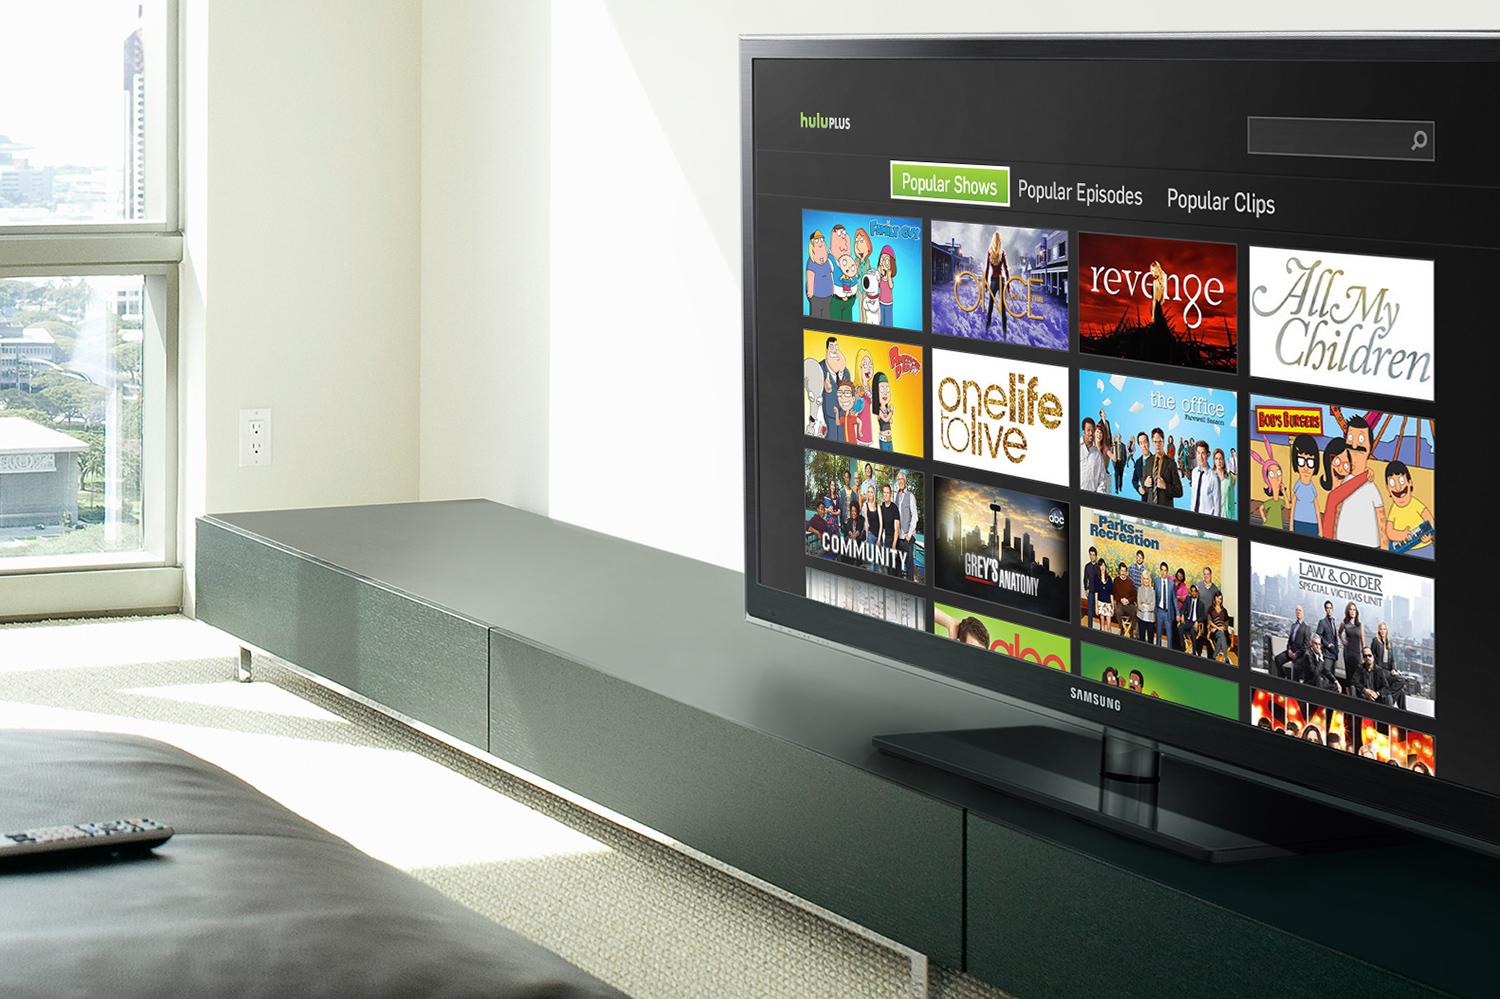 Hulu and Hulu with Live TV